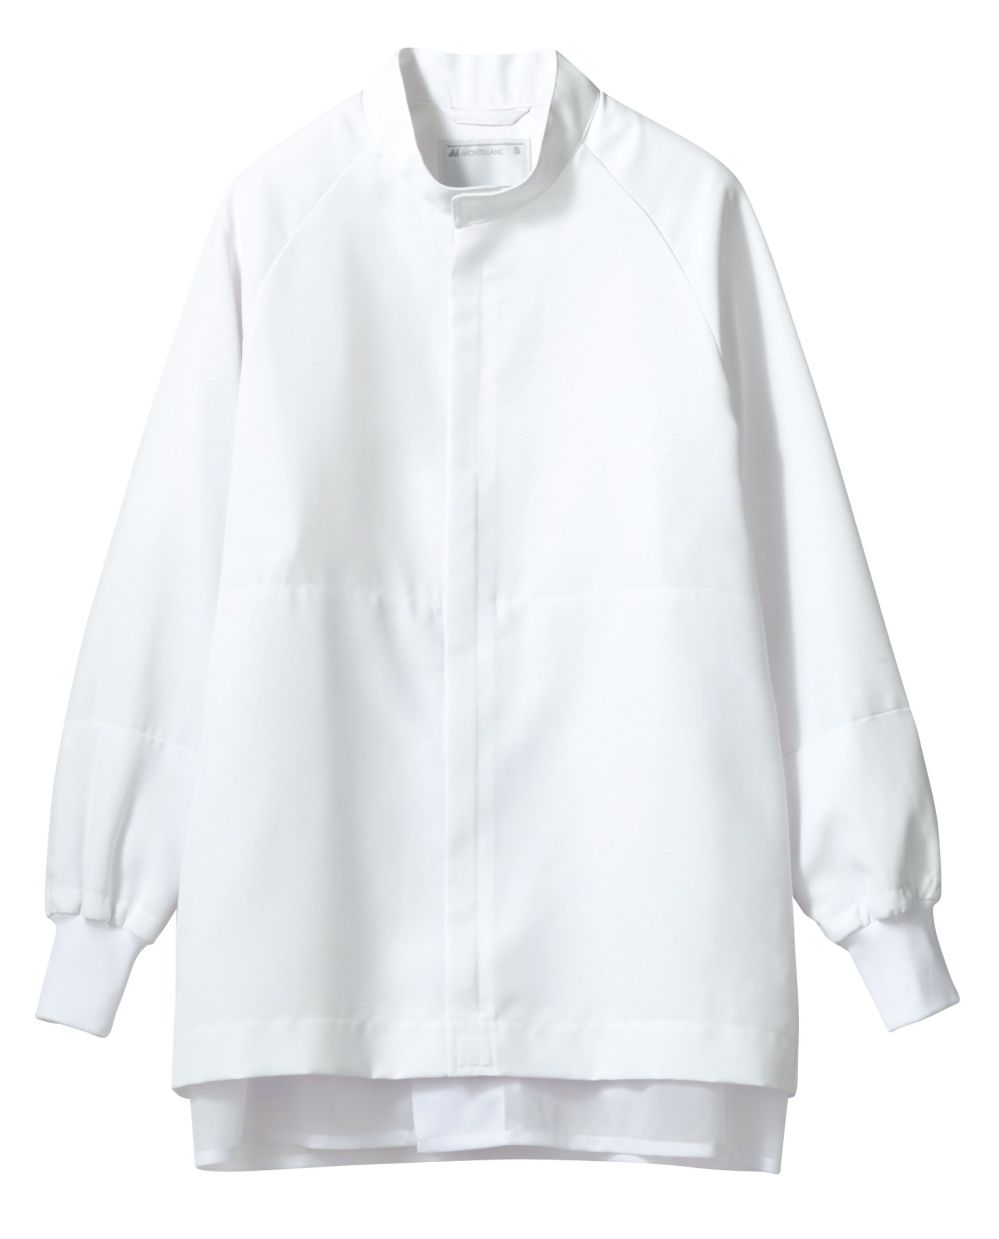 食品白衣jp ブルゾン(男女兼用・長袖) 住商モンブラン DC8711-2 食品白衣の専門店